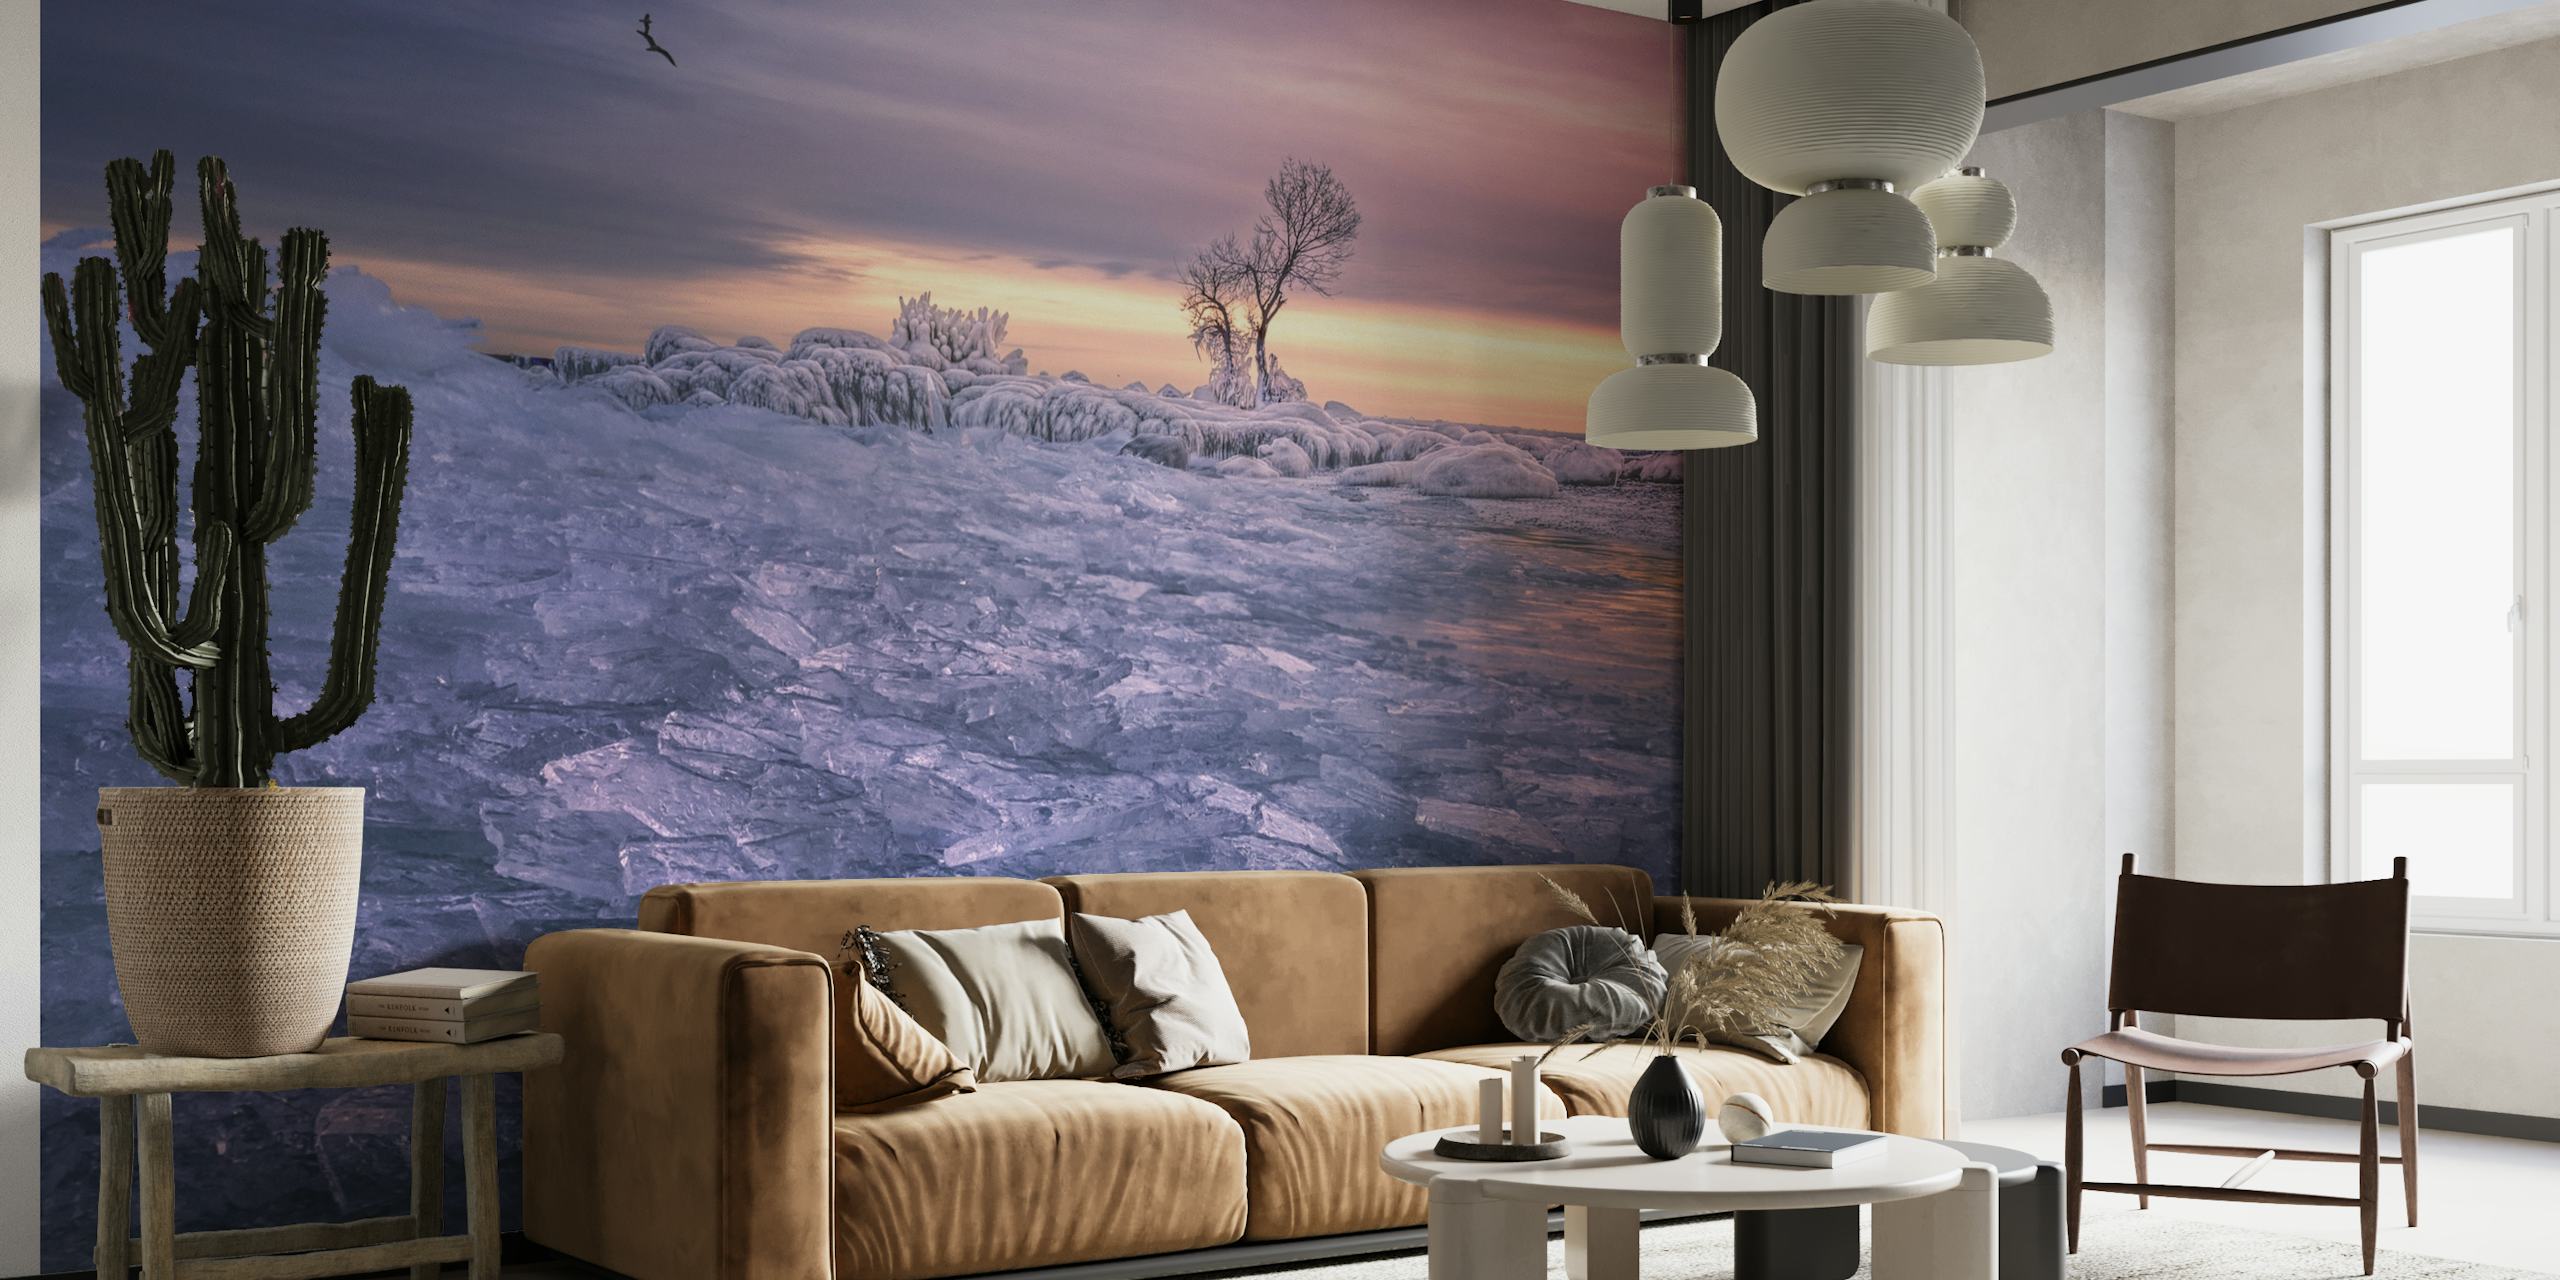 Fototapeta s klidnou zimní scénou s osamělým stromem a soumrakovými odstíny nad ojíněnou krajinou.